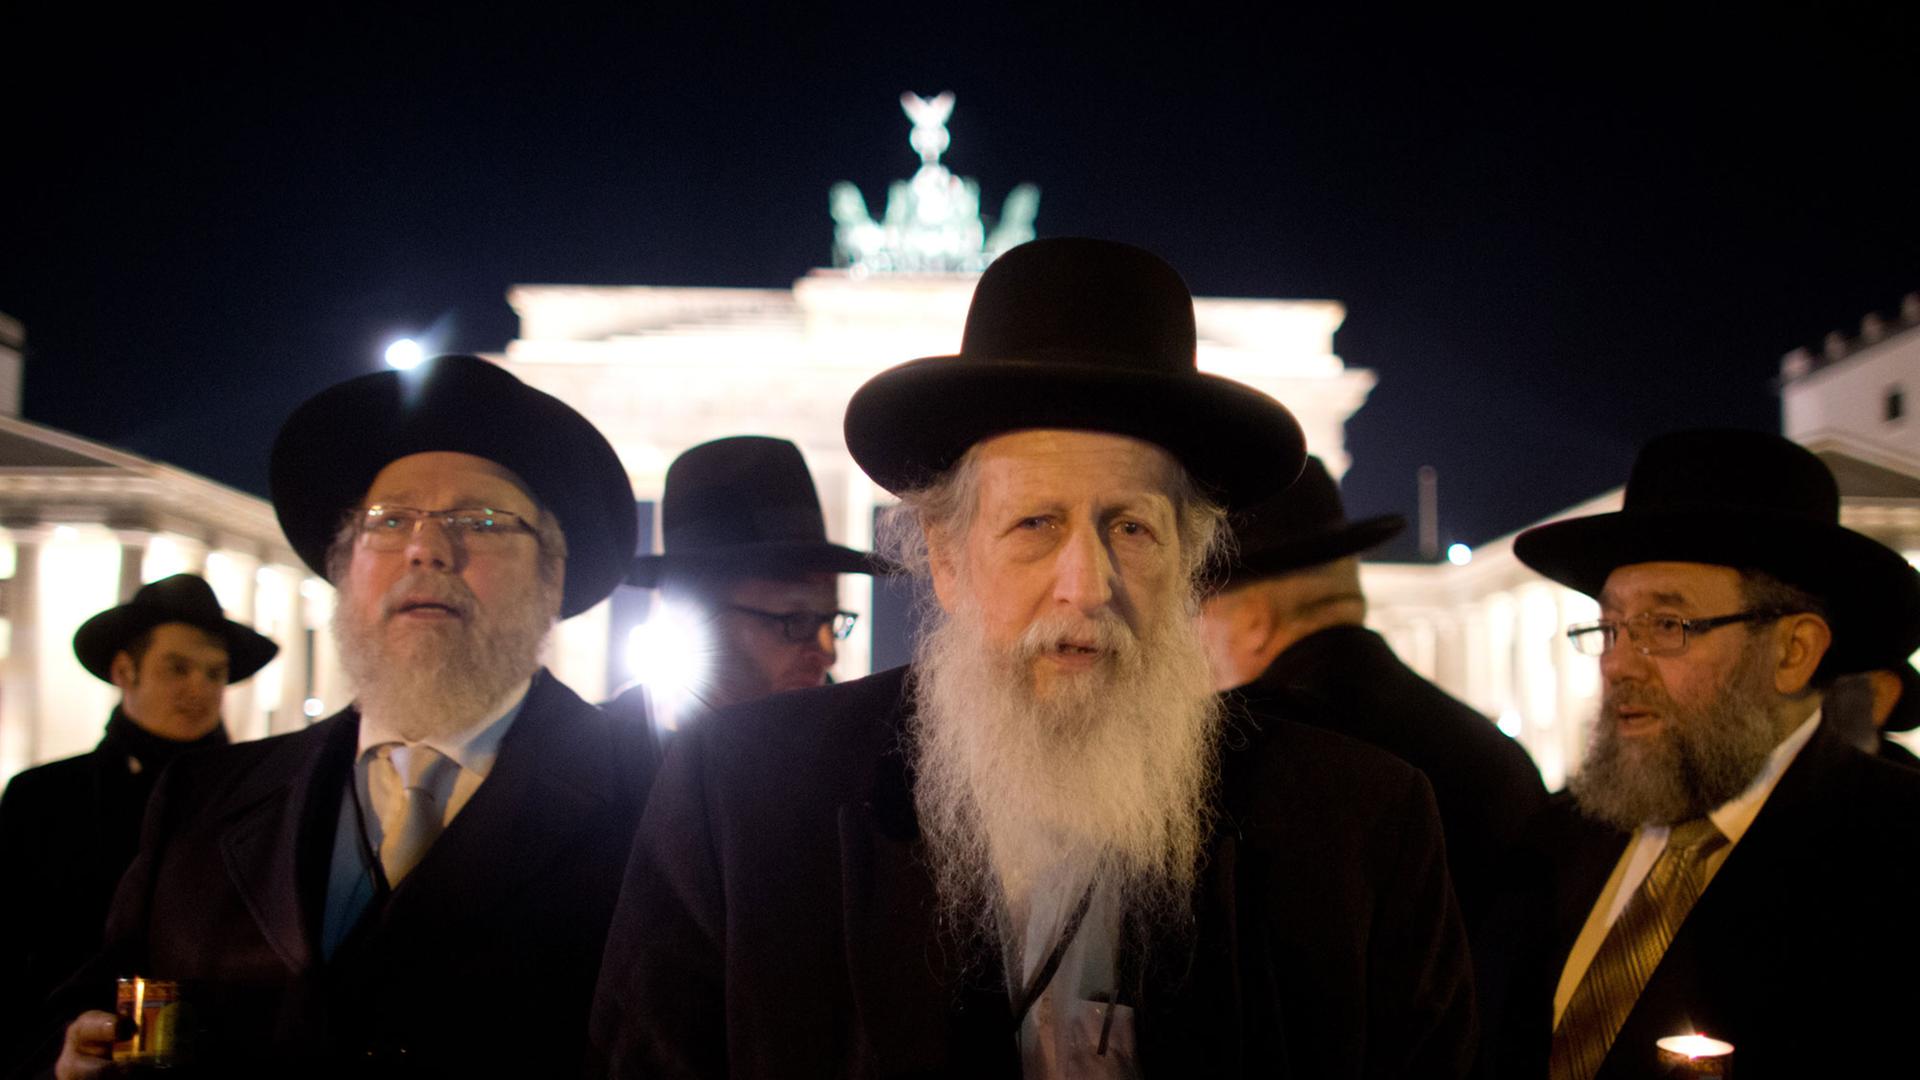 Rabbiner gedenken am 12.11.2013 mit einem Marsch vom Brandenburger Tor zum Holocaust Mahnmal in Berlin dem 75. Jahrestag der Pogromnacht. Die Veranstaltung fand im Rahmen der Europäischen Rabbinerkonferenz statt, bei der 200 Rabbiner aus ganz Europa anlässlich des 75. Jahrestages der Novemberpogrome über Minderheitenrechte in Europa diskutieren.